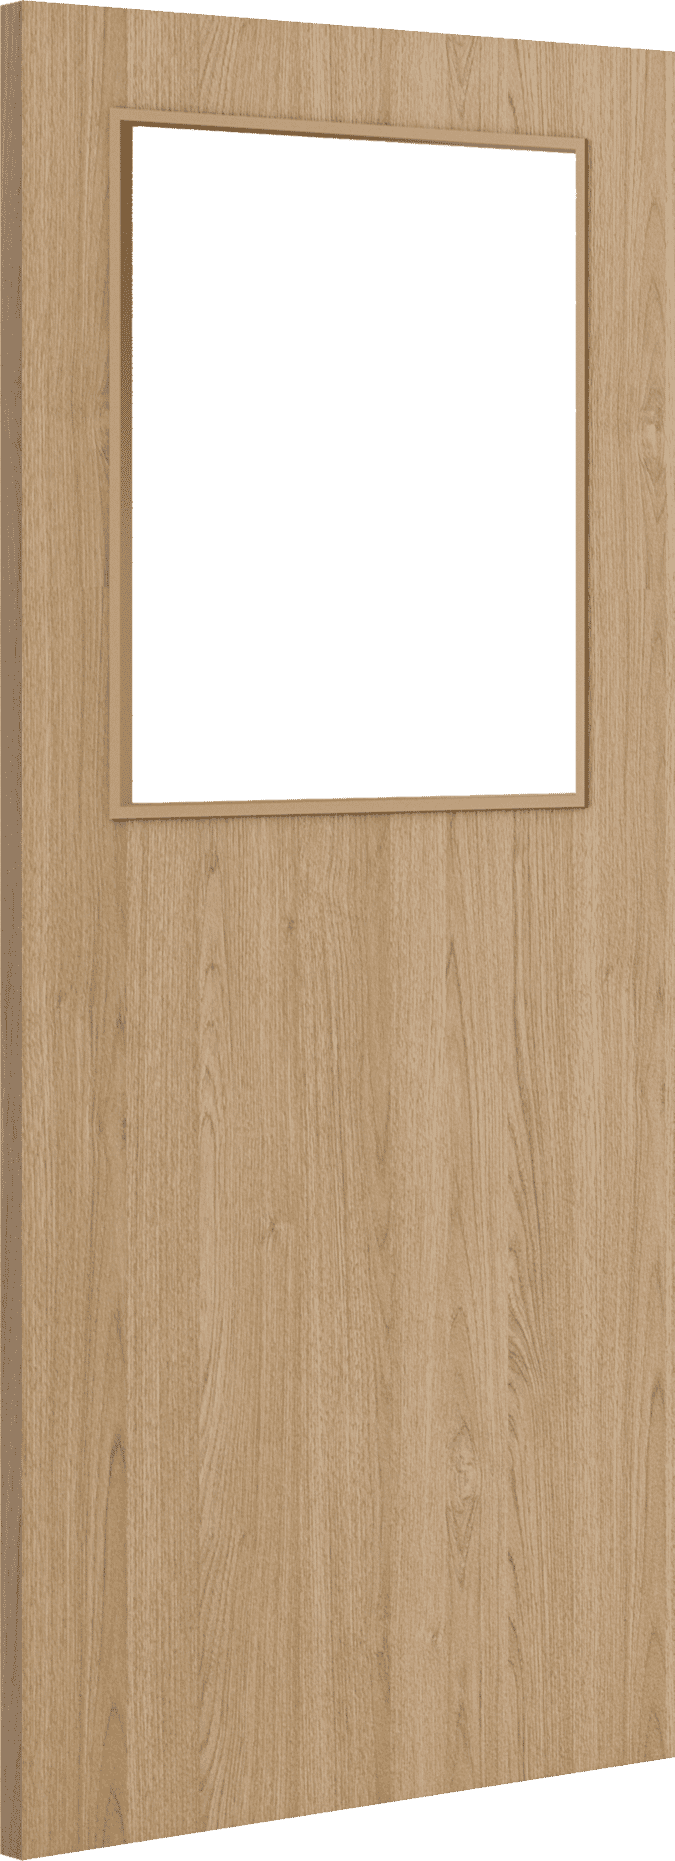 1981mm x 457mm x 44mm (18") Architectural Oak 01 Clear Glazed - Prefinished FD30 Fire Door Blank